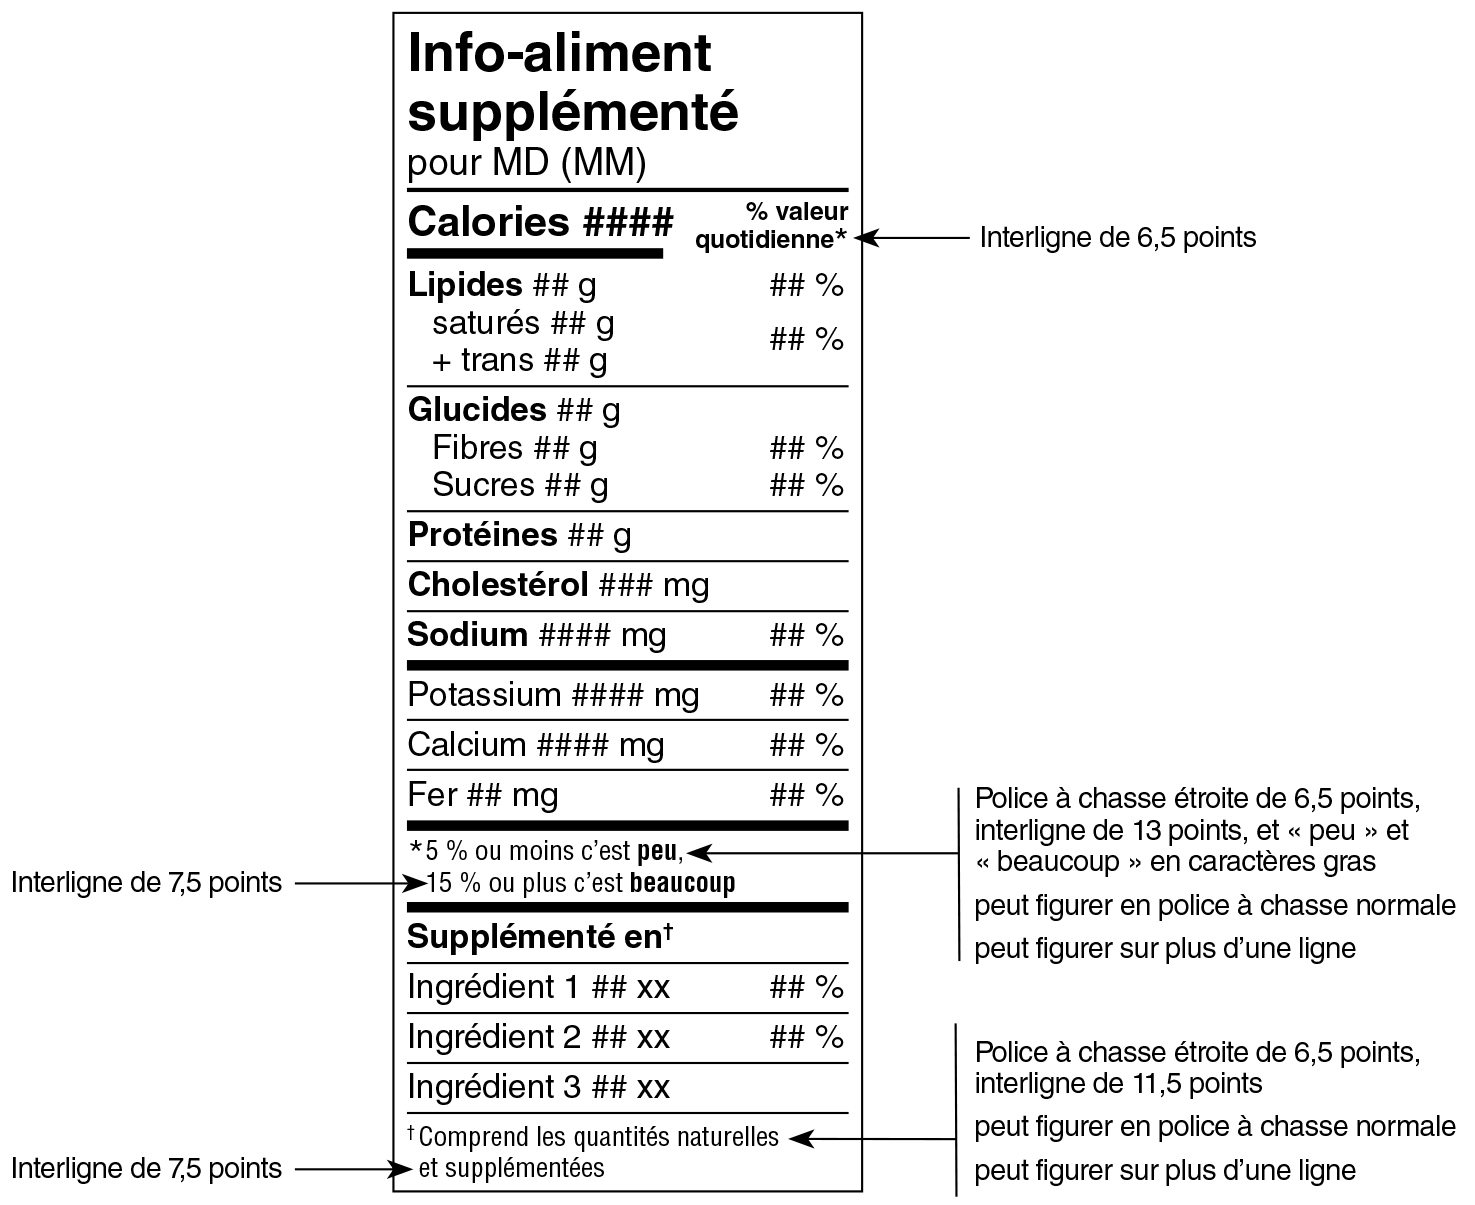 Modèle standard étroit français du tableau des renseignements sur les aliments supplémentés avec indications. Version texte ci-dessous.